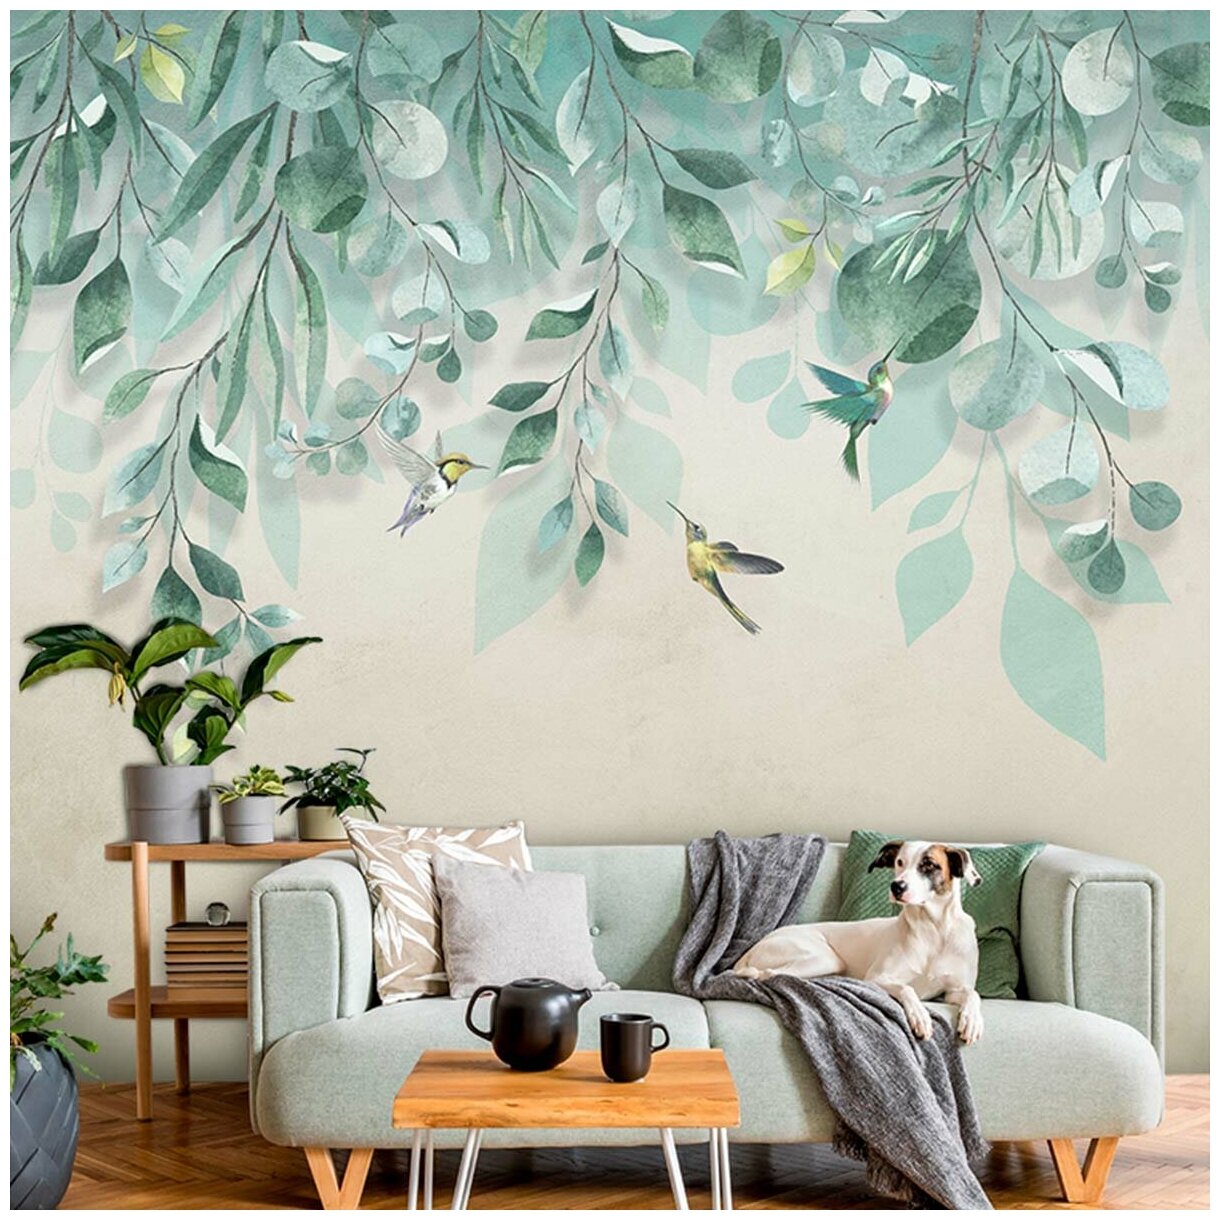 Фотообои флизелиновые с виниловым покрытием VEROL "Листья", 300х283 см, моющиеся обои на стену, декор для дома